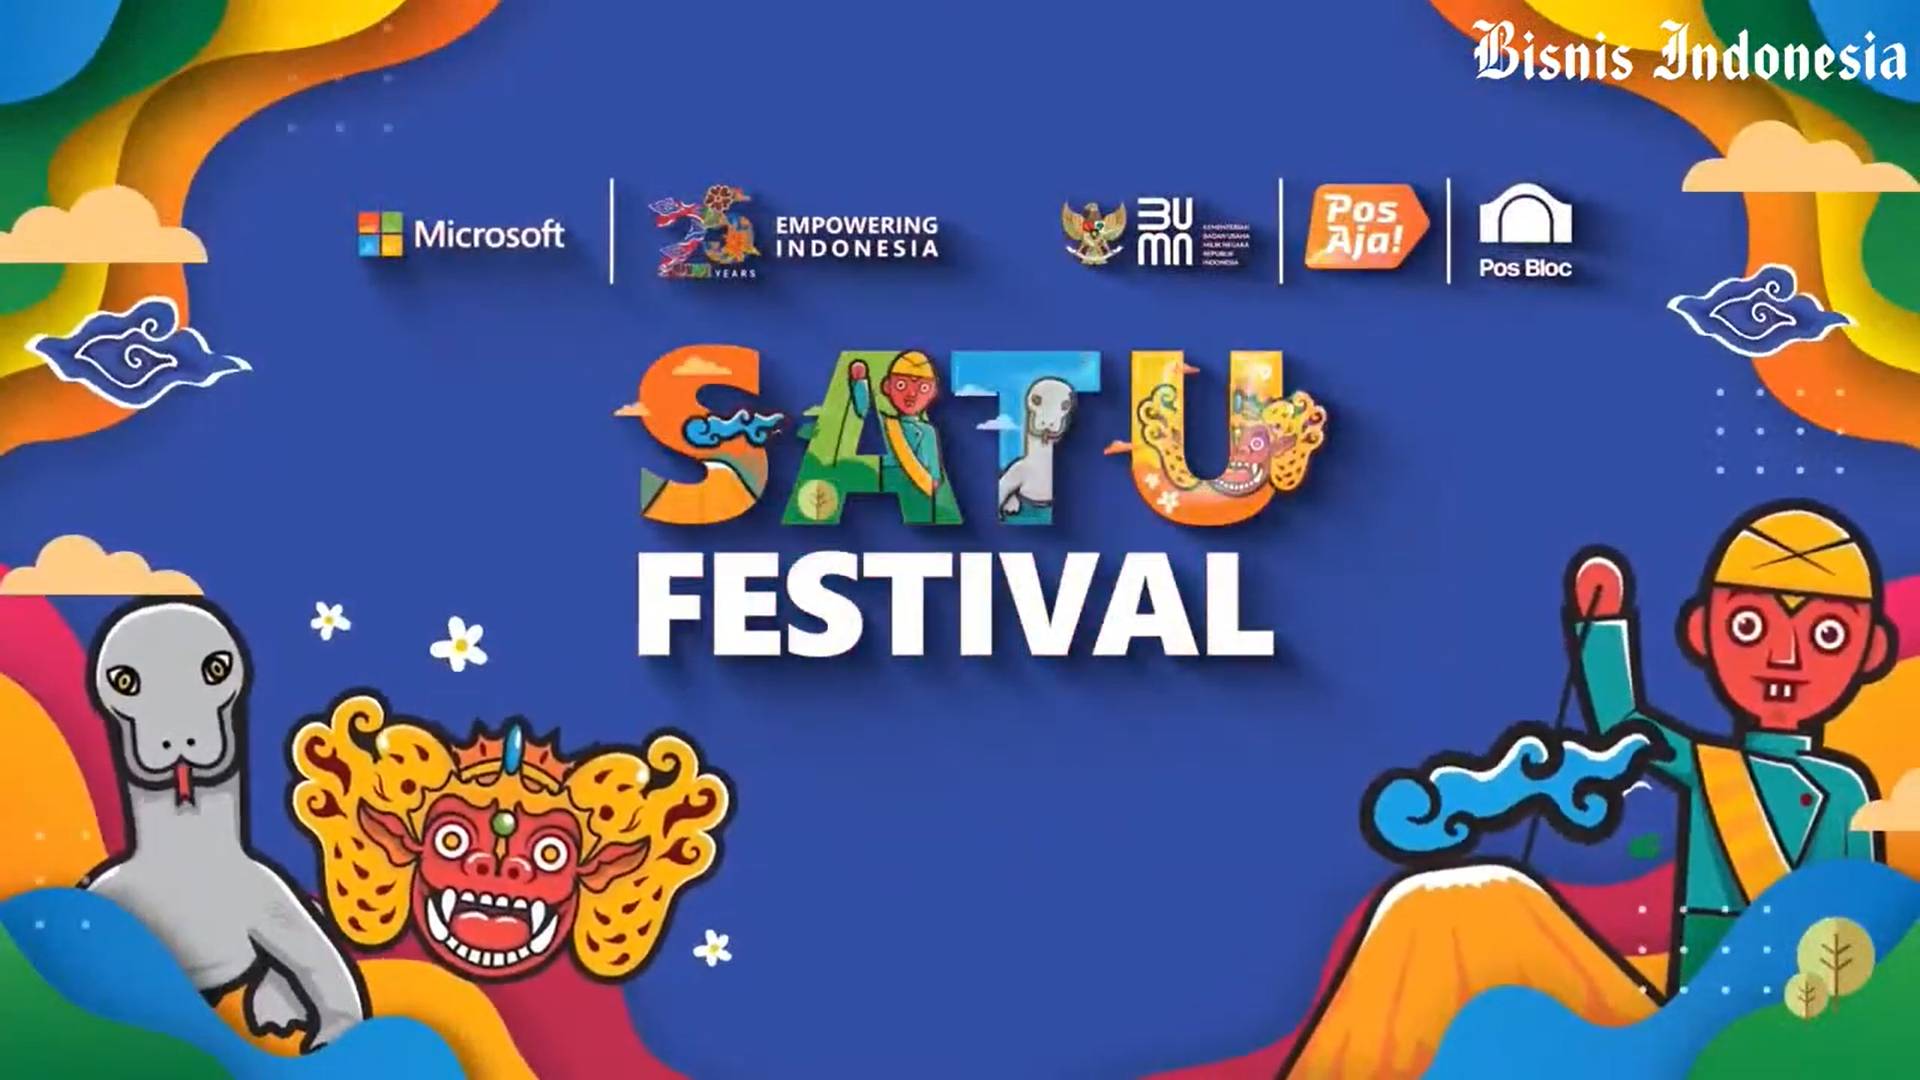 SATU Festival